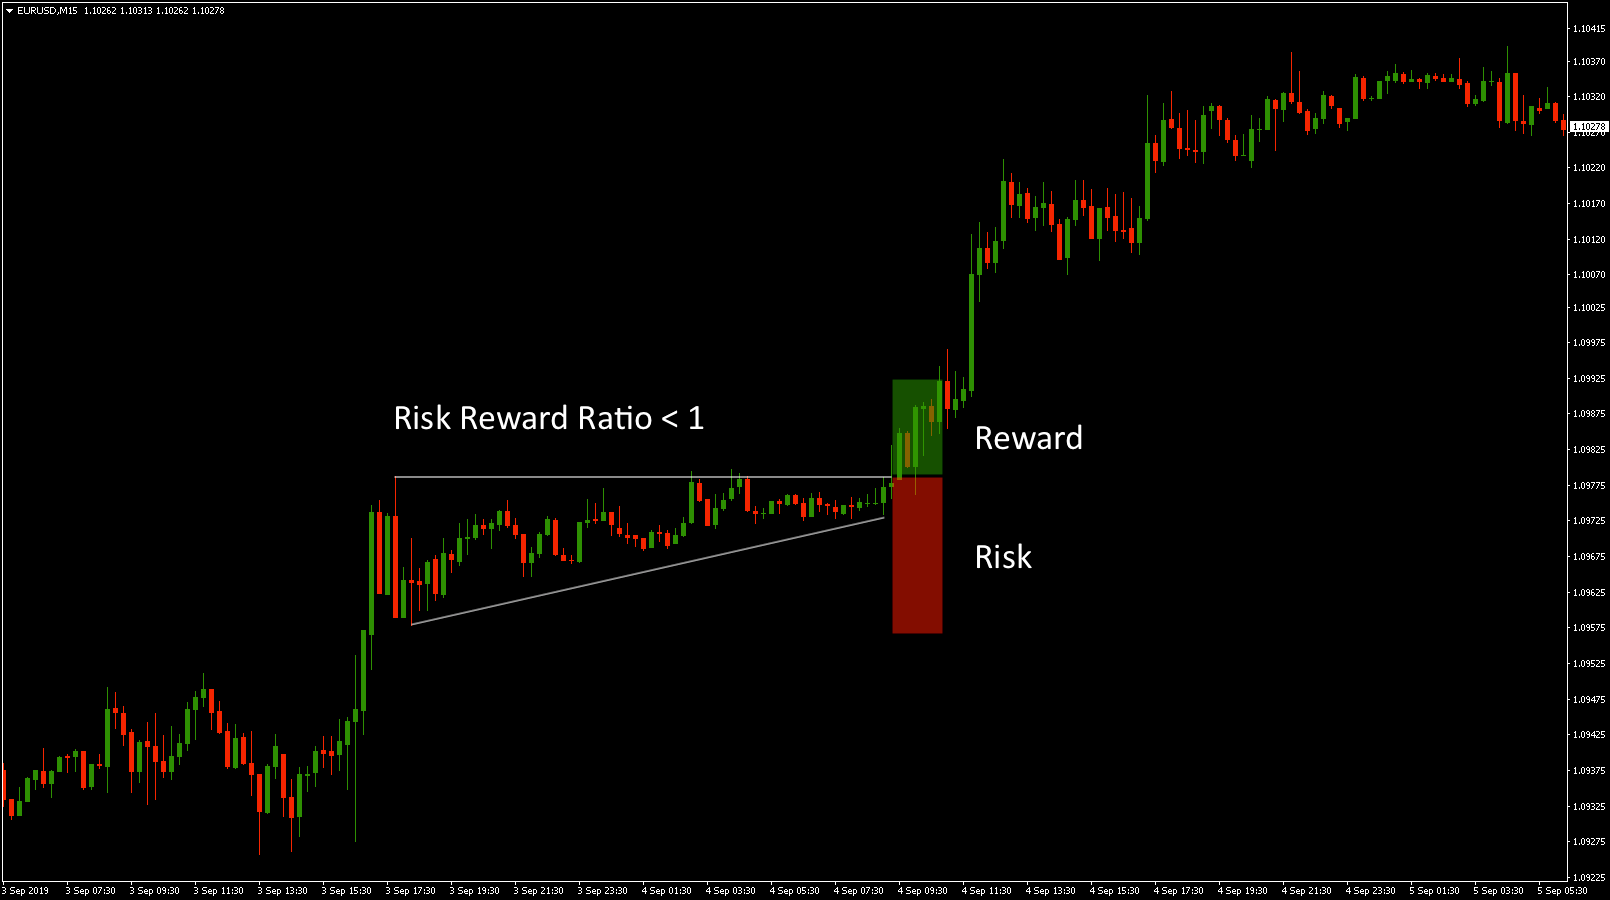 Low Risk Reward Ratio Trade